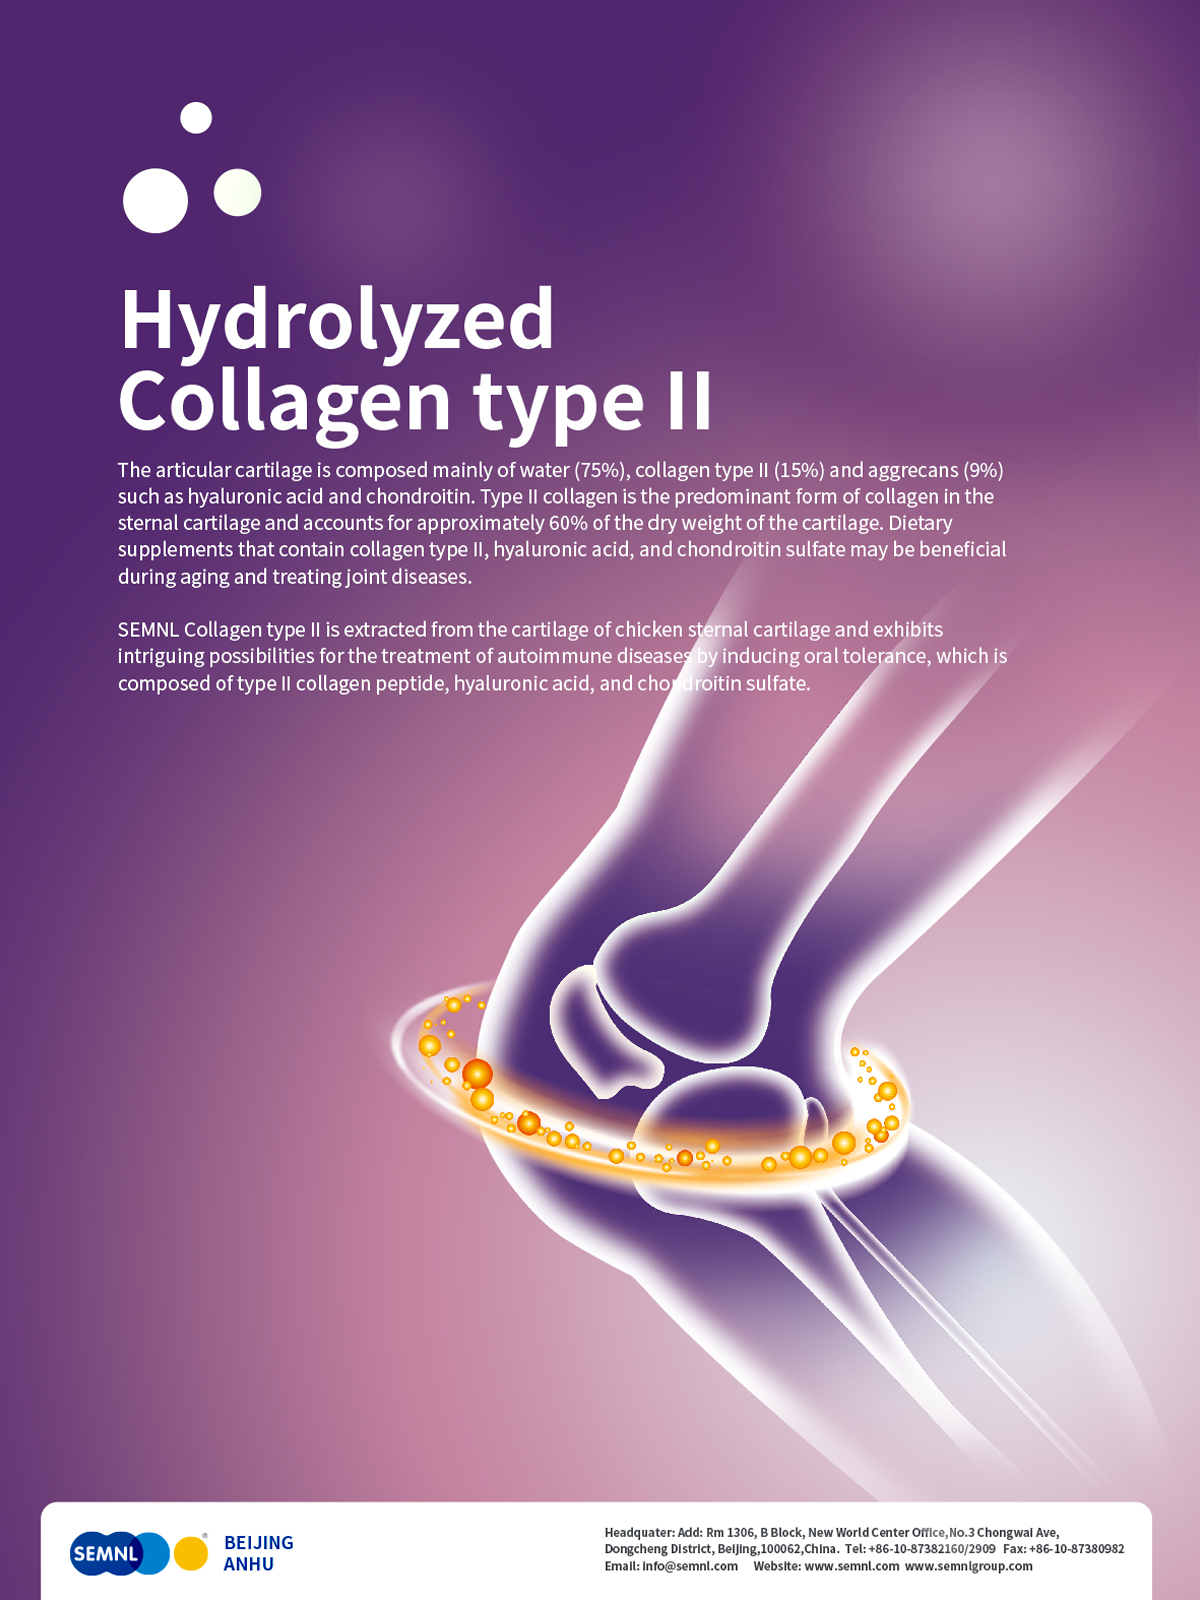 Hydrolyzed Collagen Type II